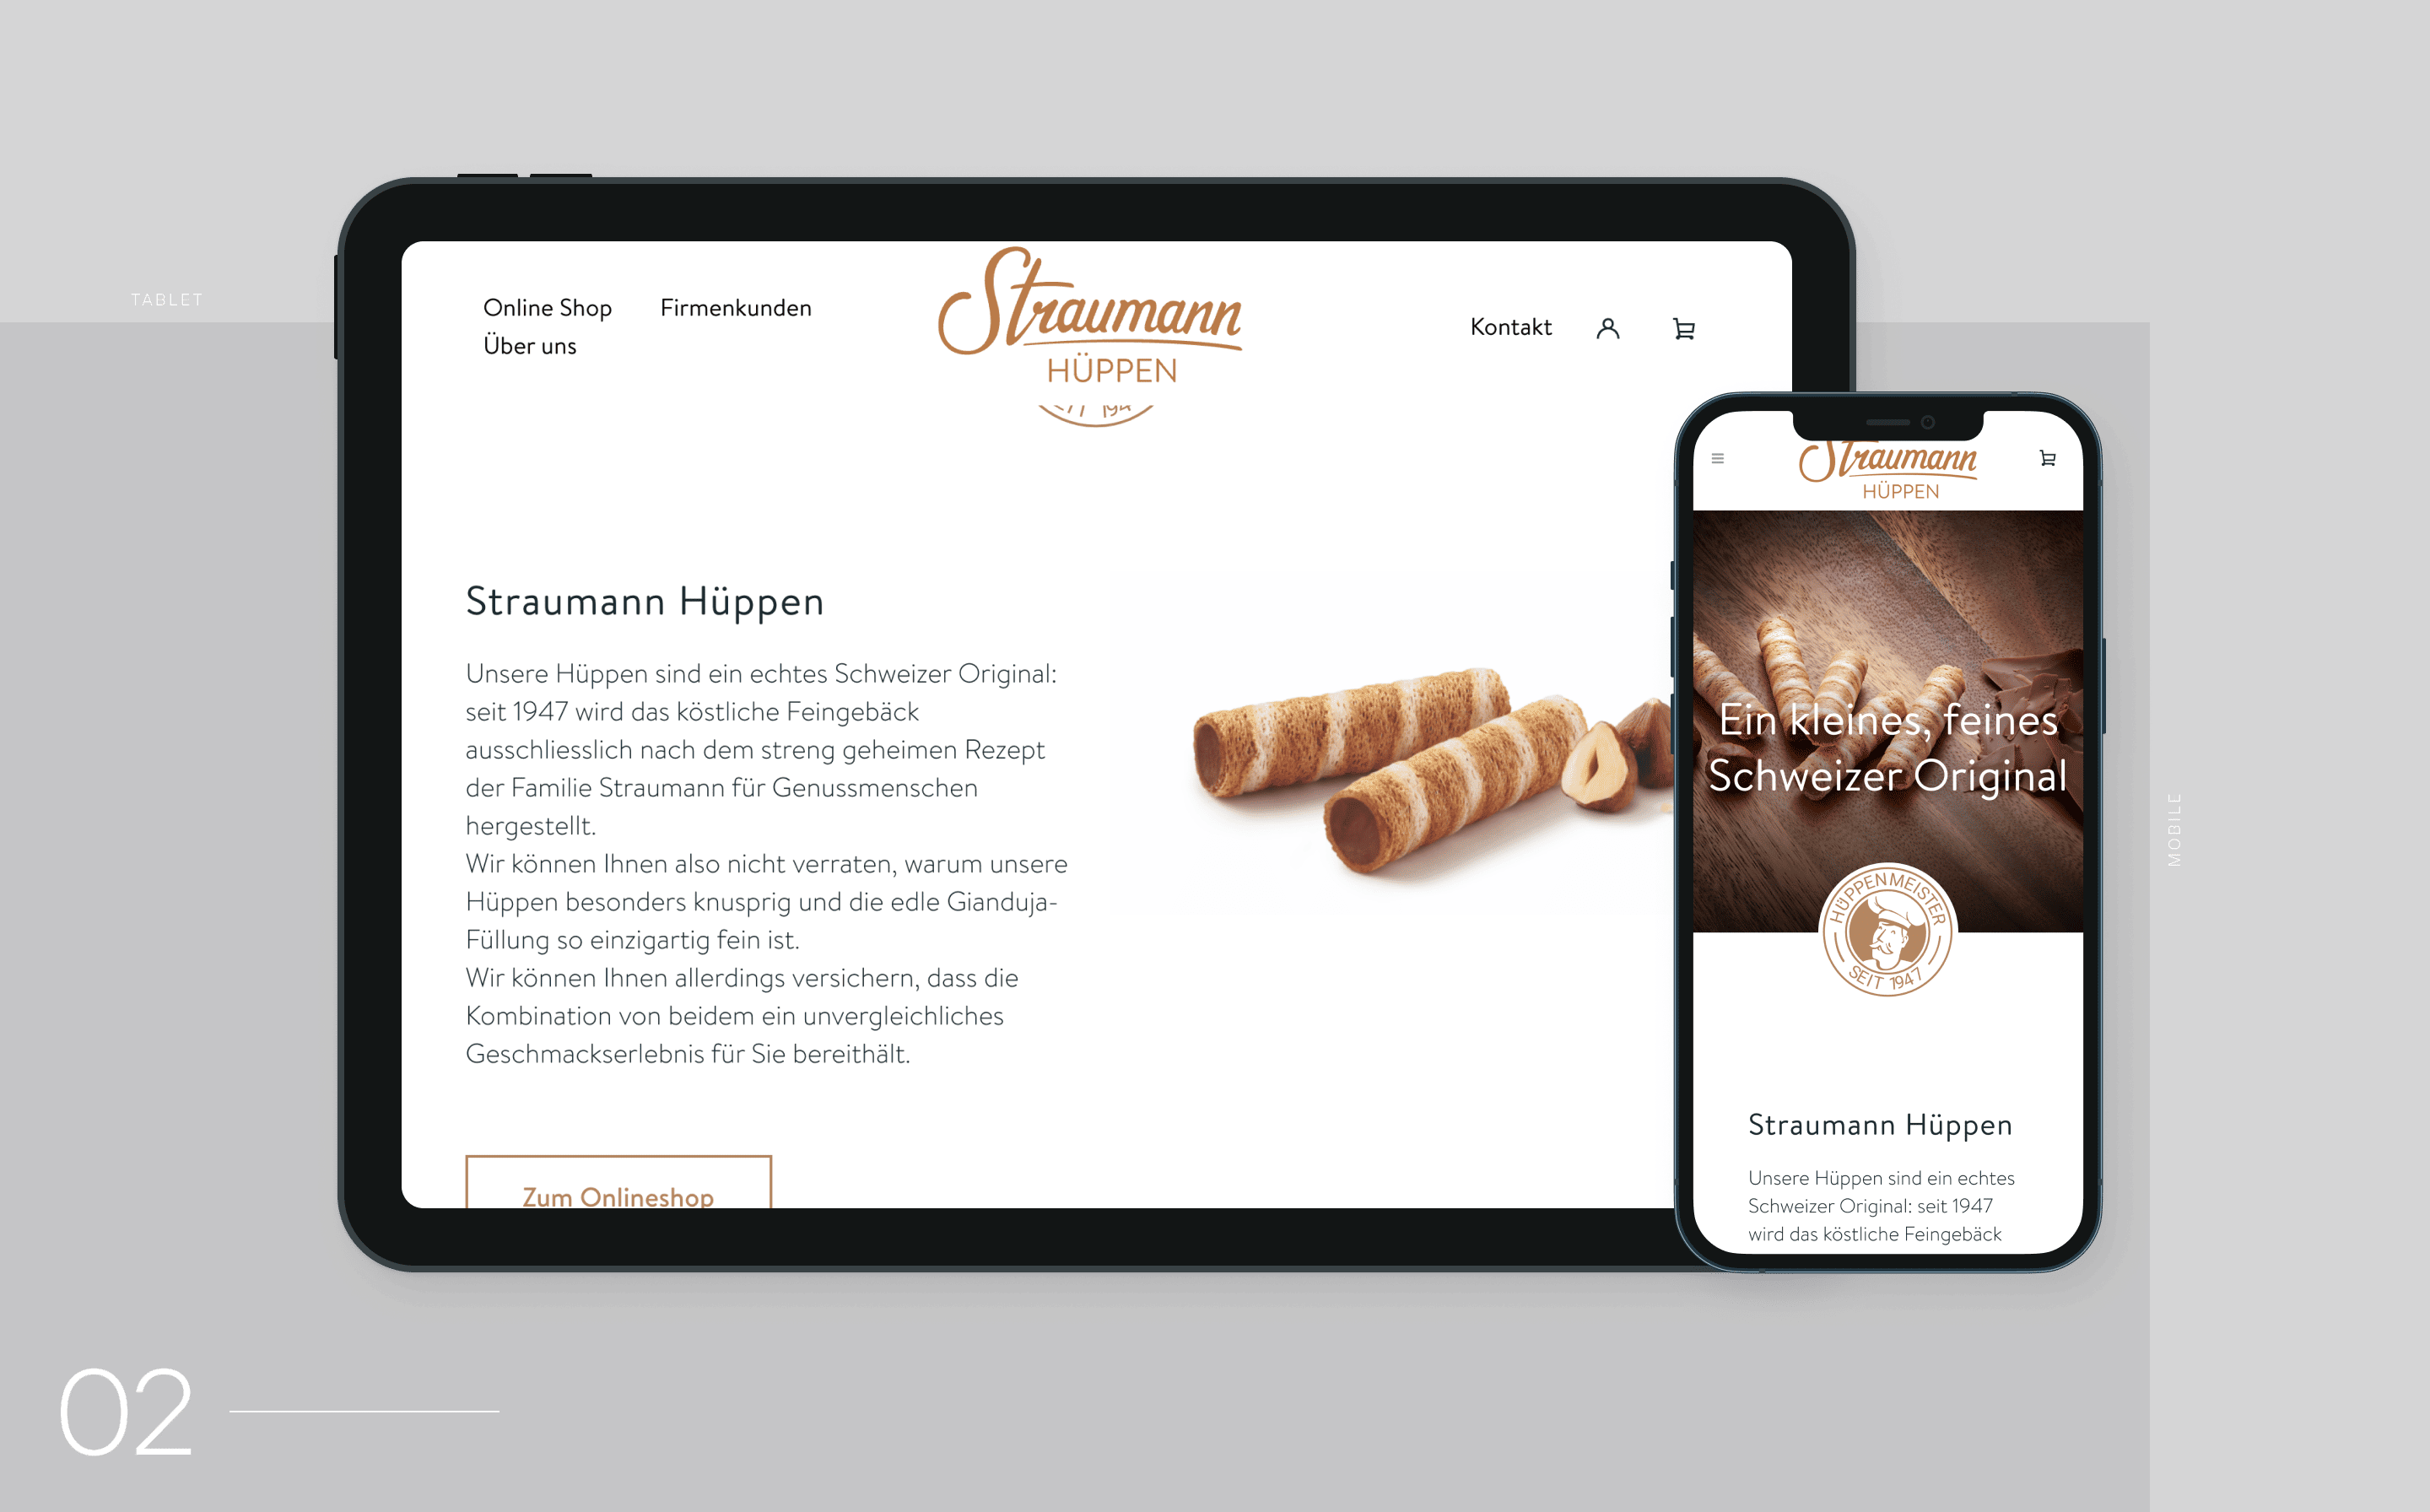 Vorschaubild einer Produkt-Einzelseite auf Tablet und Mobile